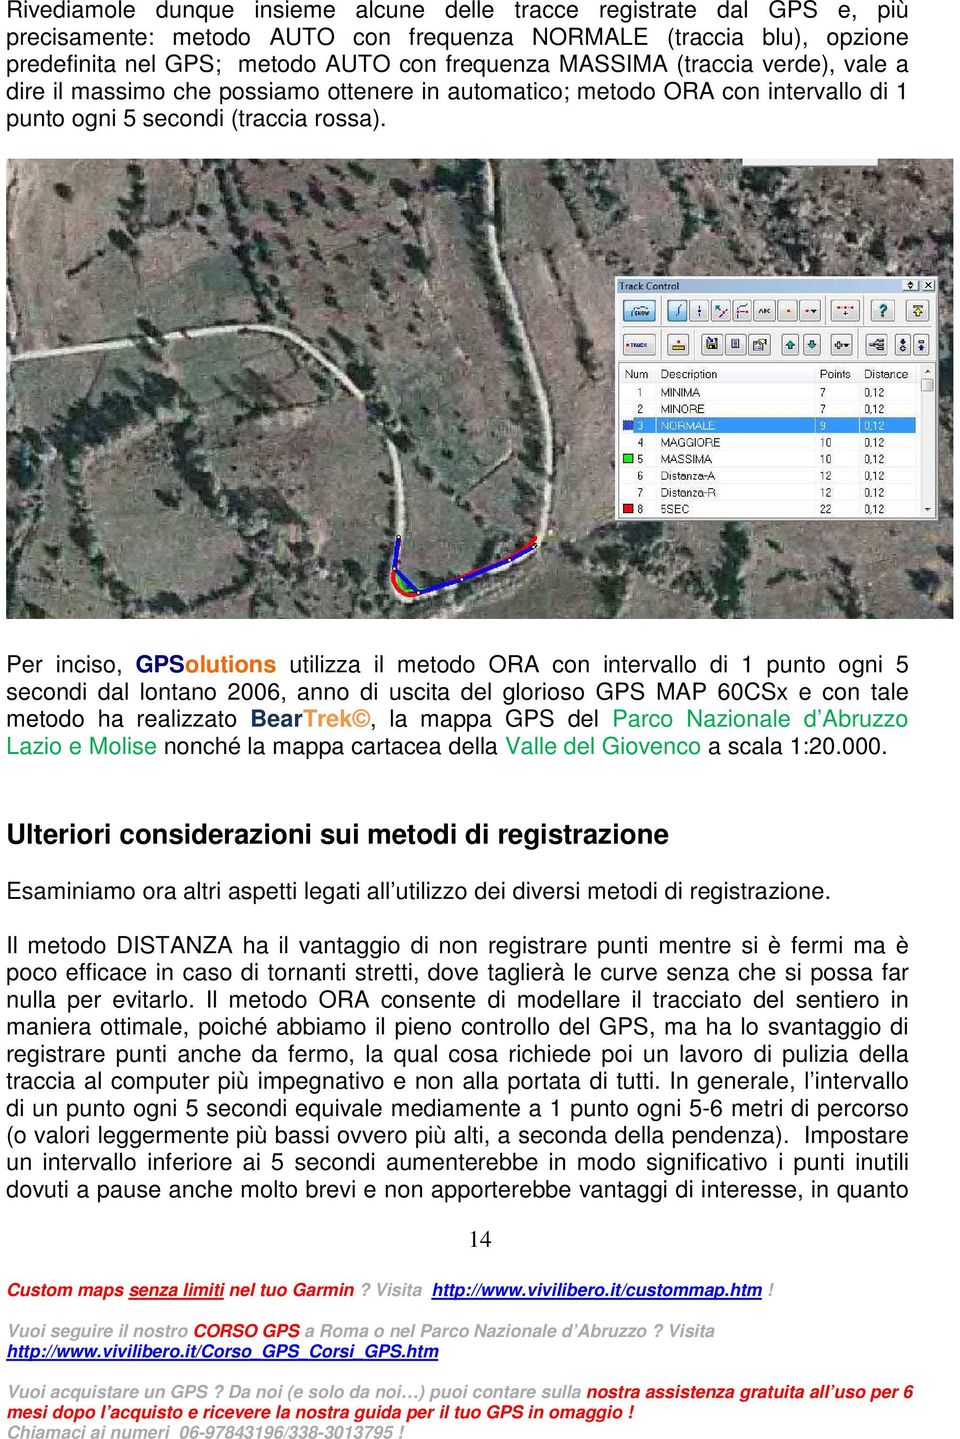 Per inciso, GPSolutions utilizza il metodo ORA con intervallo di 1 punto ogni 5 secondi dal lontano 2006, anno di uscita del glorioso GPS MAP 60CSx e con tale metodo ha realizzato BearTrek, la mappa